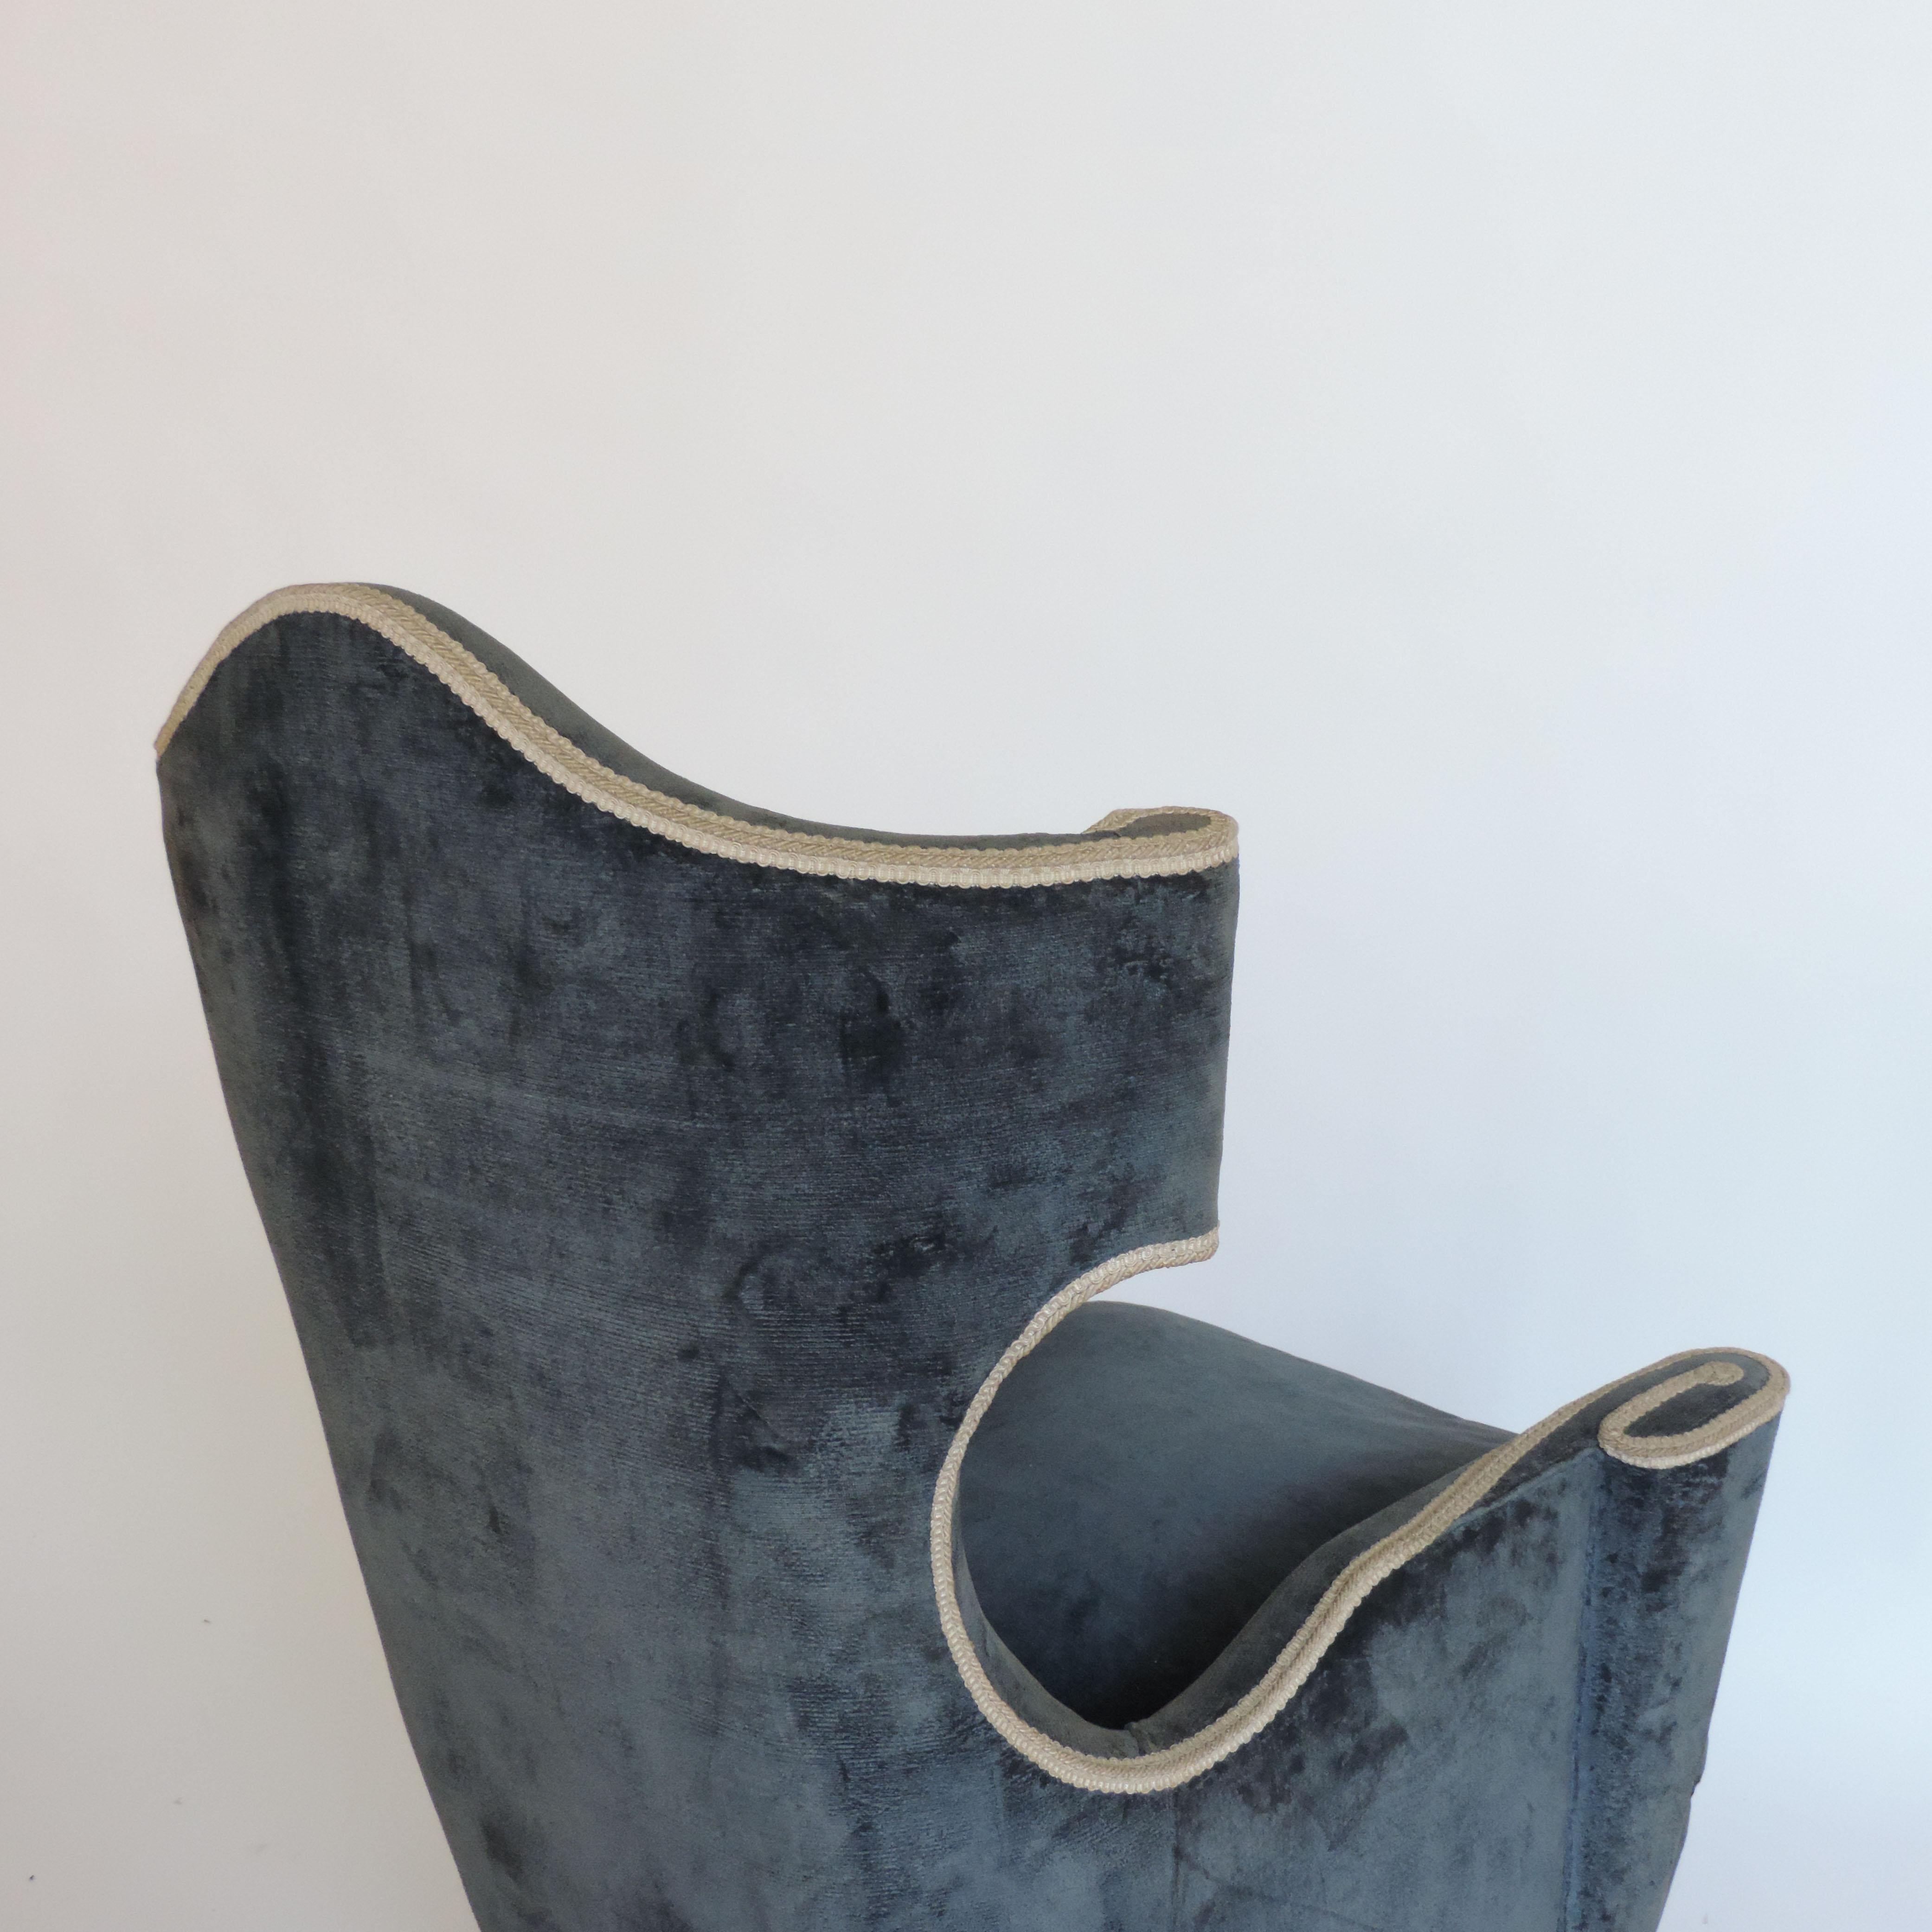 Surreales Paar italienischer Sessel Bergeres aus den 1950er Jahren mit originaler dunkelblauer Samtpolsterung.
Kegelförmige Holzbeine